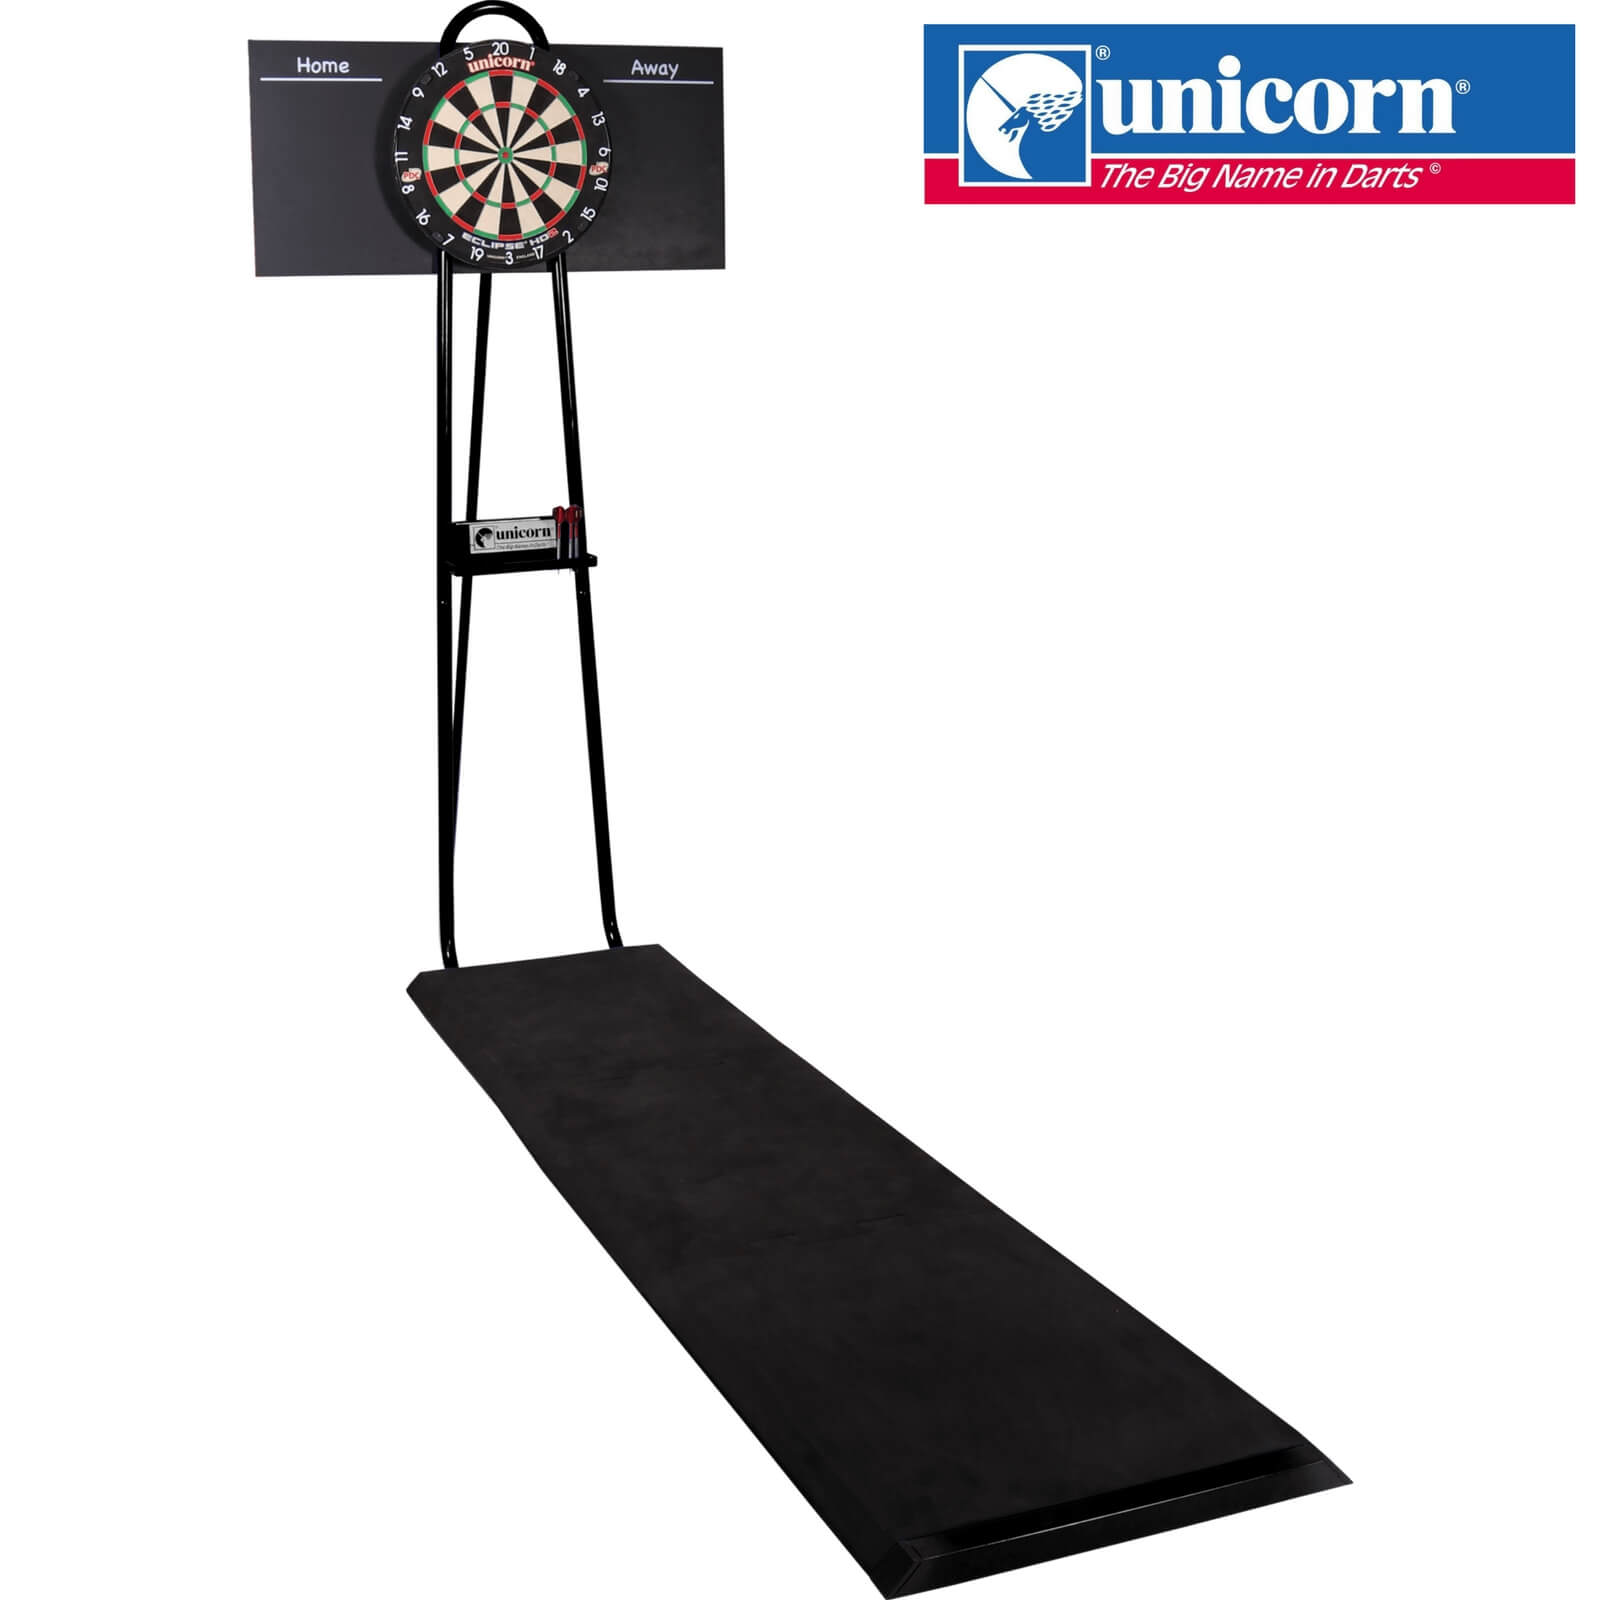 Dartboard Accessories - Unicorn - Dartmate Pro 2 Tournament Dartboard Stand - Shipping Included 